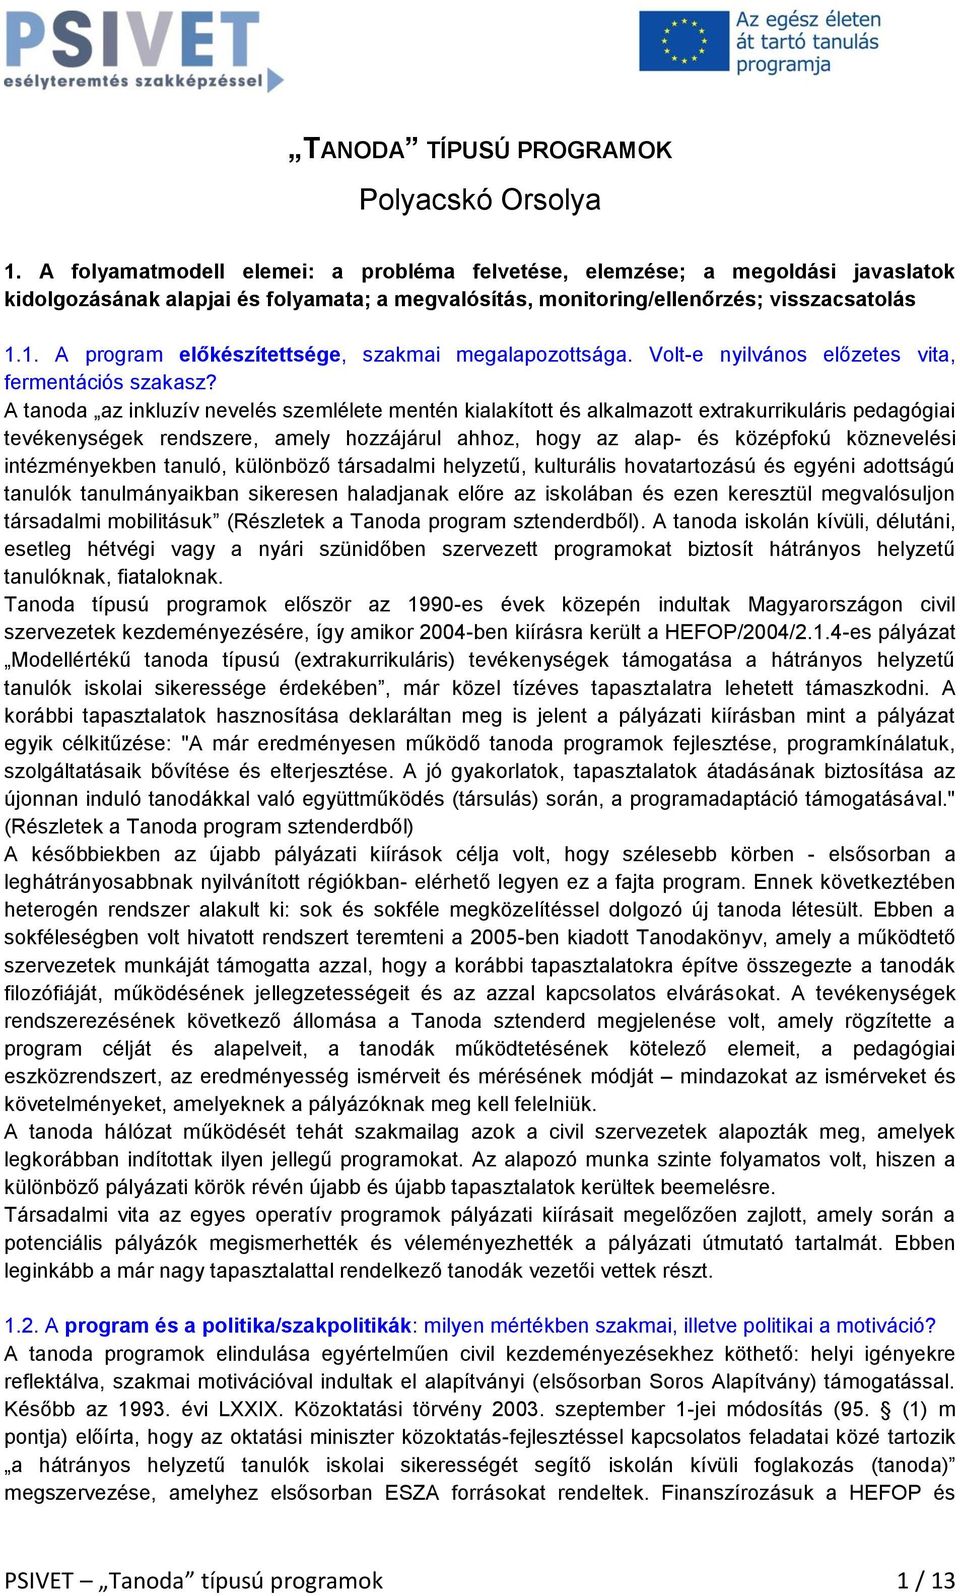 TANODA TÍPUSÚ PROGRAMOK Polyacskó Orsolya - PDF Ingyenes letöltés